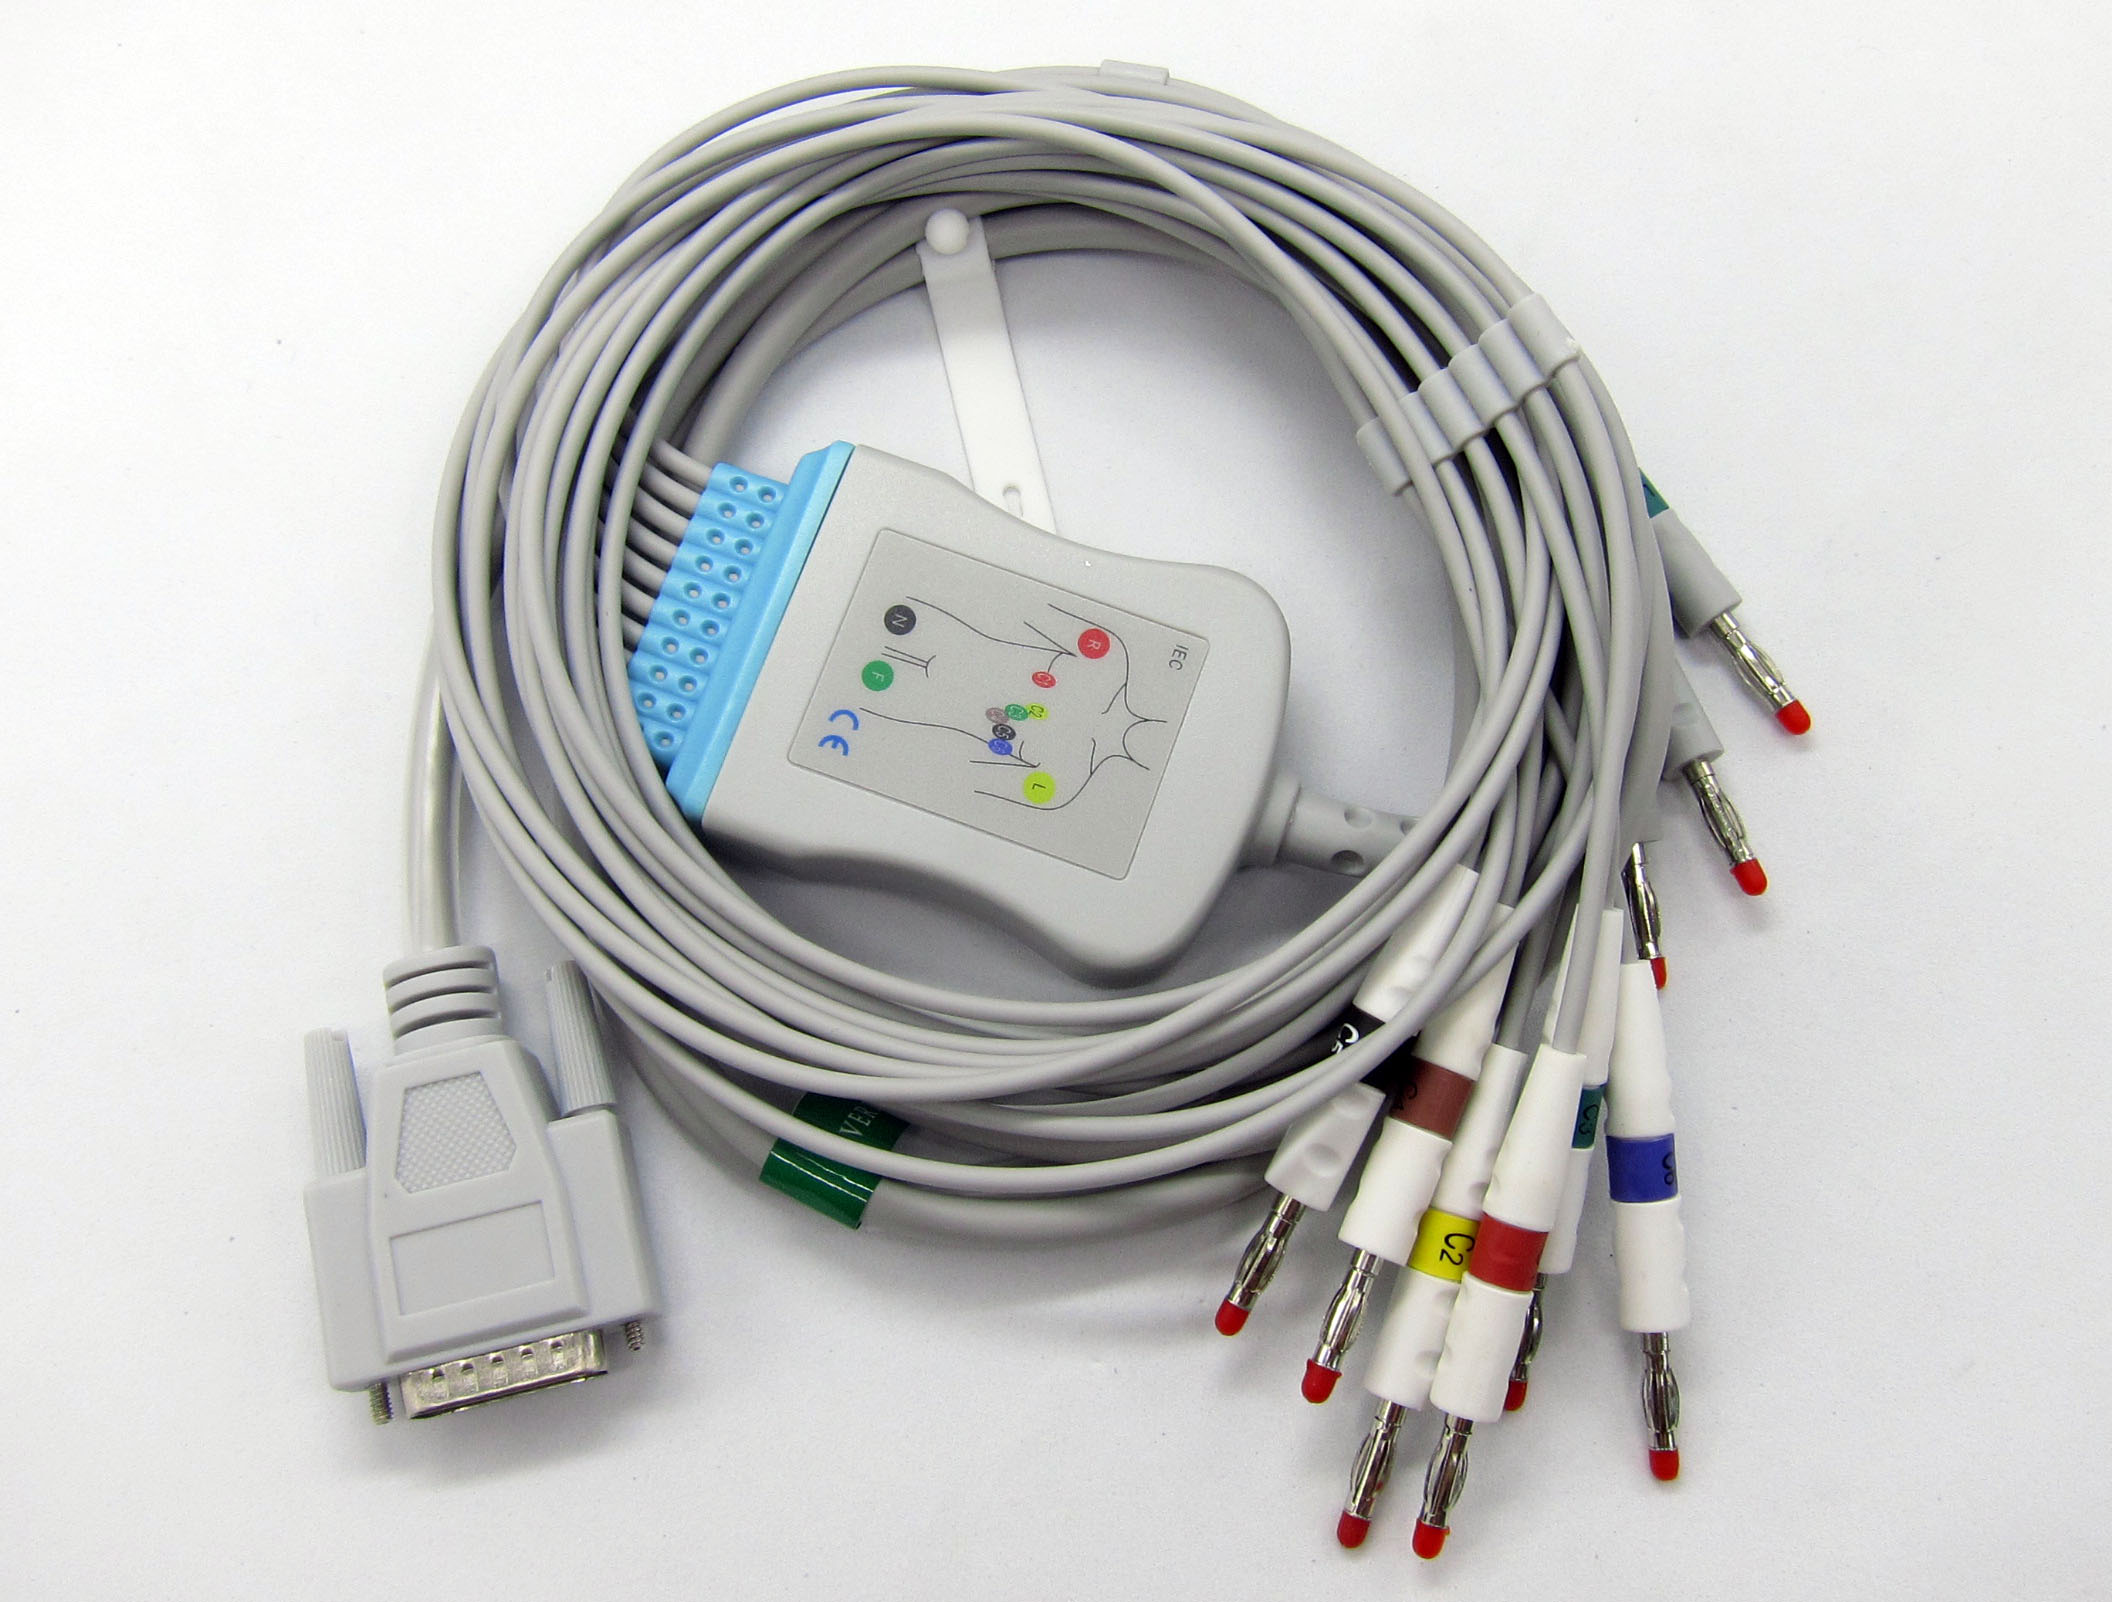 ЭКГ кабель пациента для Yasen ECG 901, ECG 901A, ECG 903, ECG 903A, ECG 923, ECG 923A, штекер banana 4мм